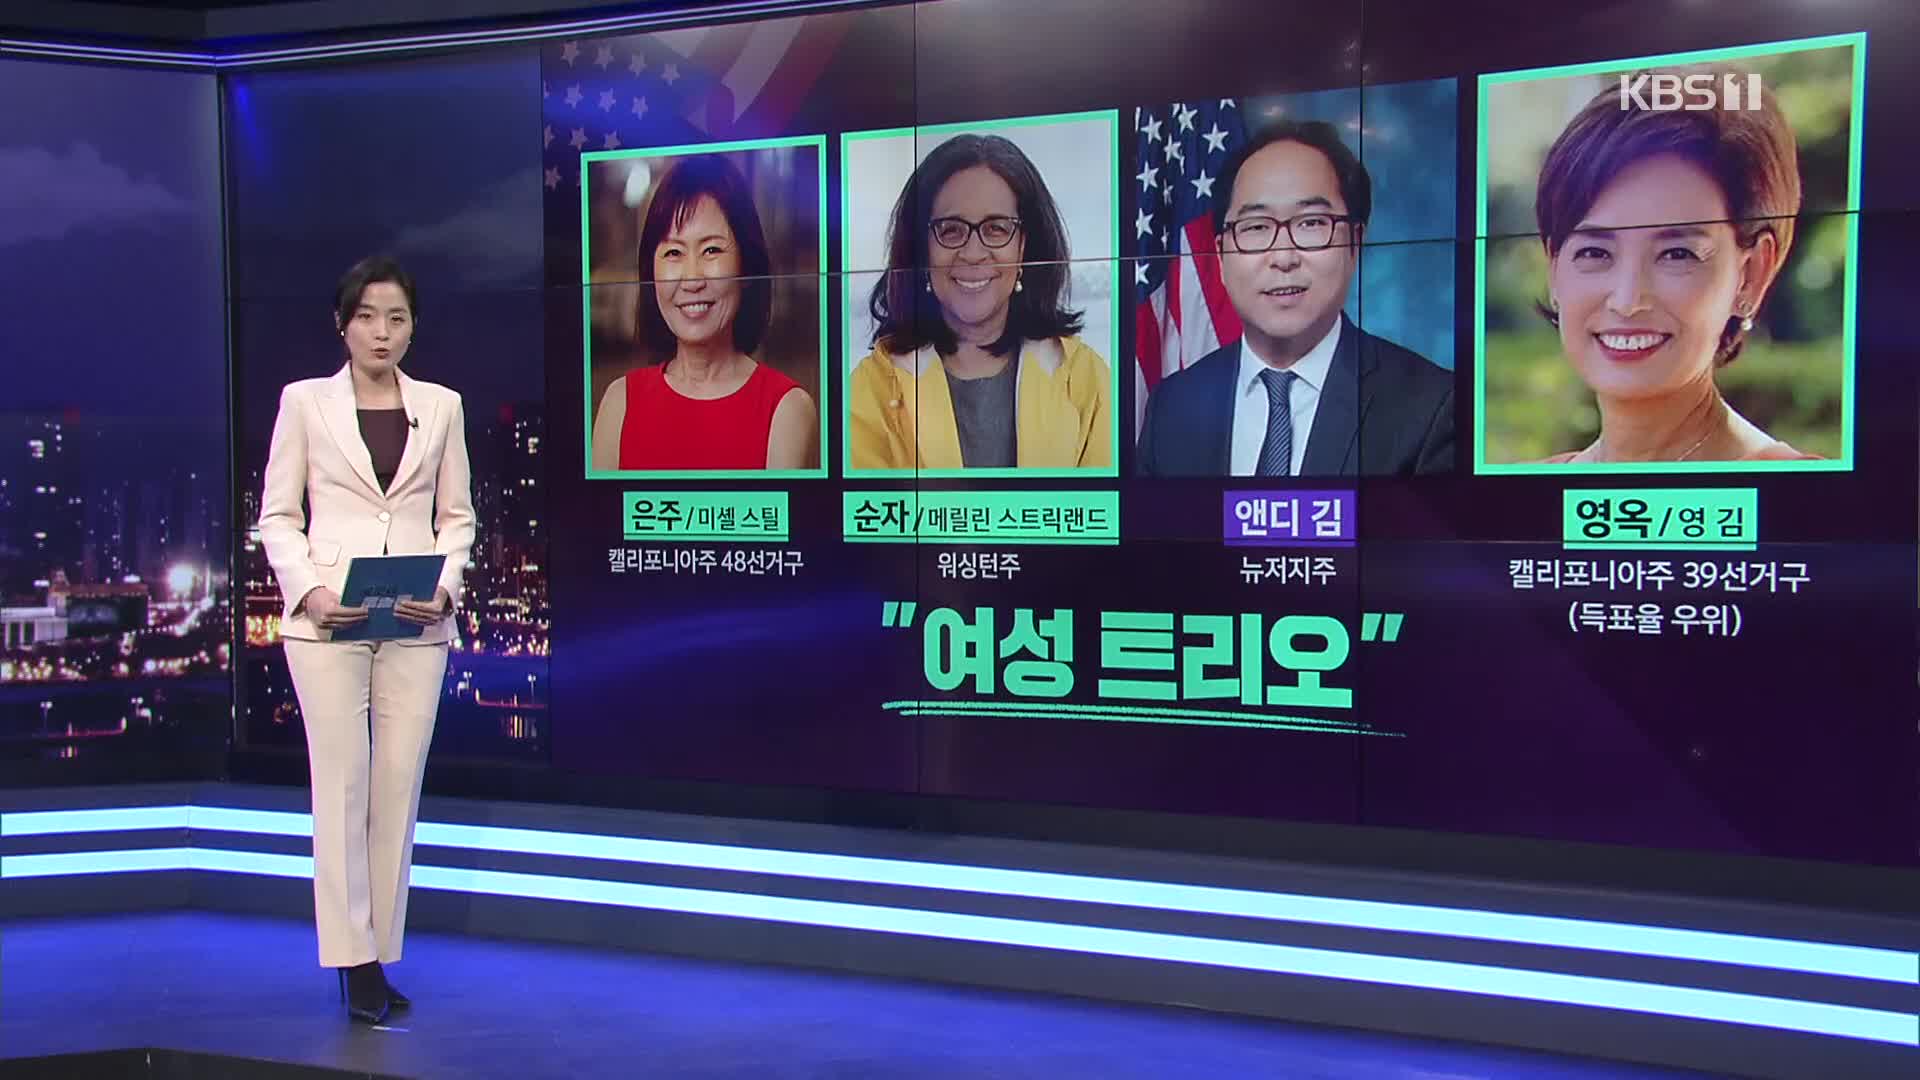 한국계 3명, 미 연방하원 입성…미셸 박, 5전 연승